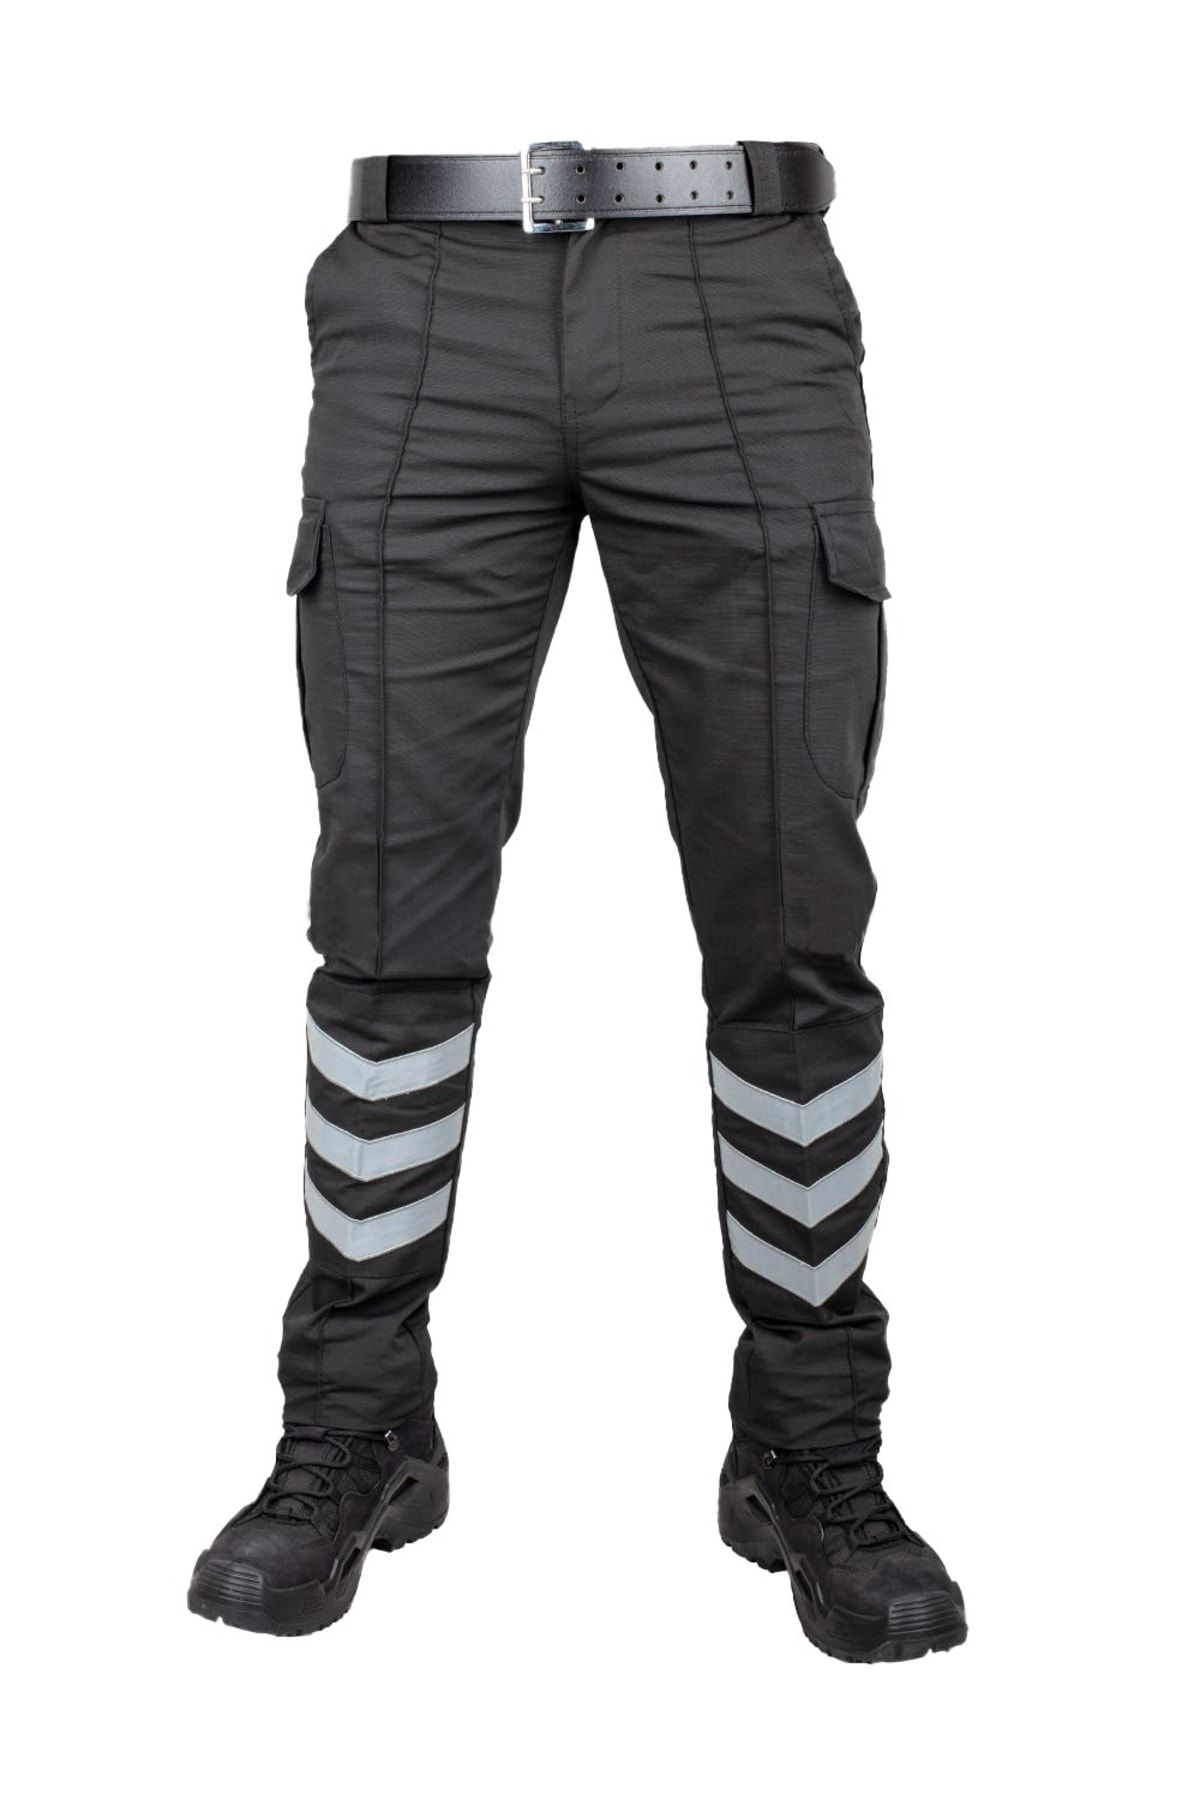 Safari Avm Özel Güvenlik Pantolonu Yeni Model Likralı